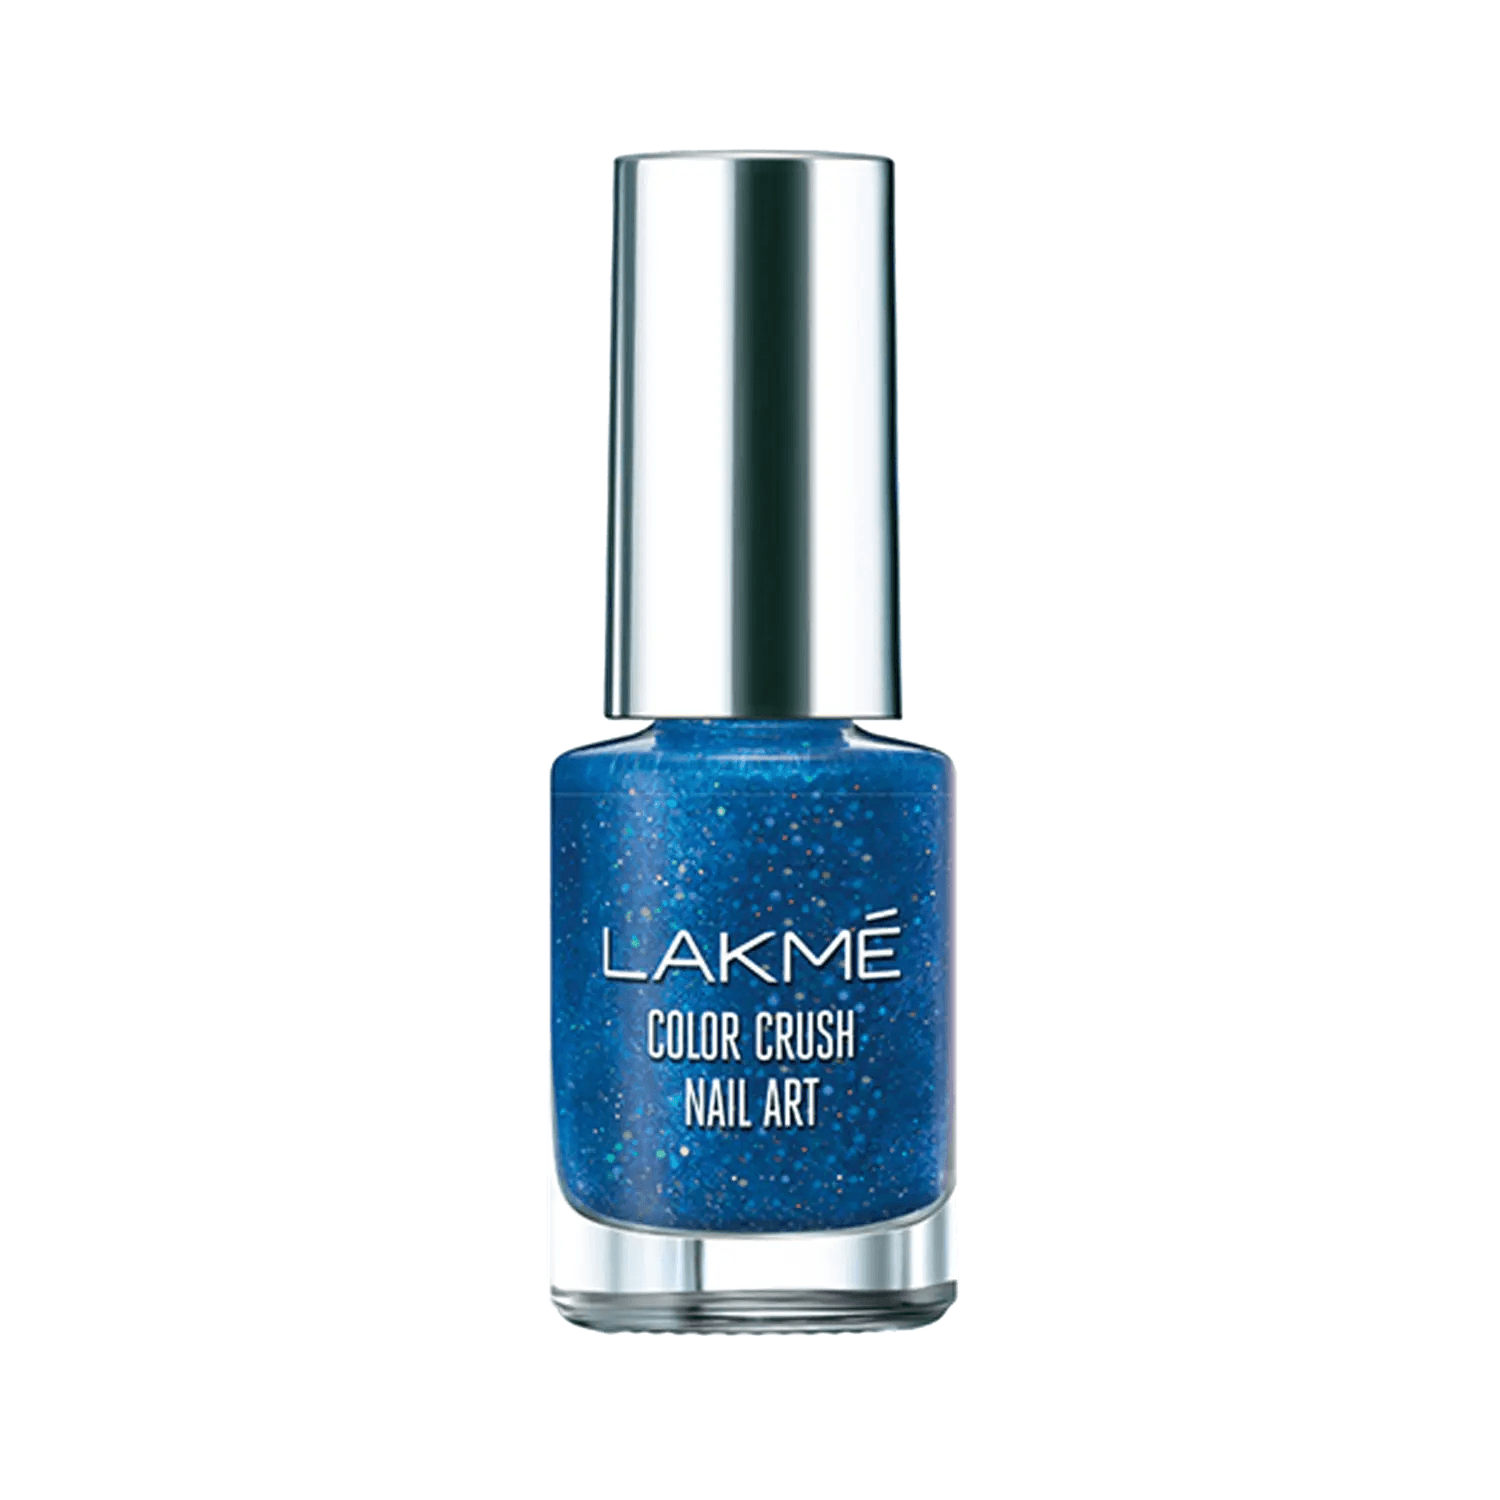 Lakmé Color Crush Nailart – M14 Sand Blue – Beauty Basket